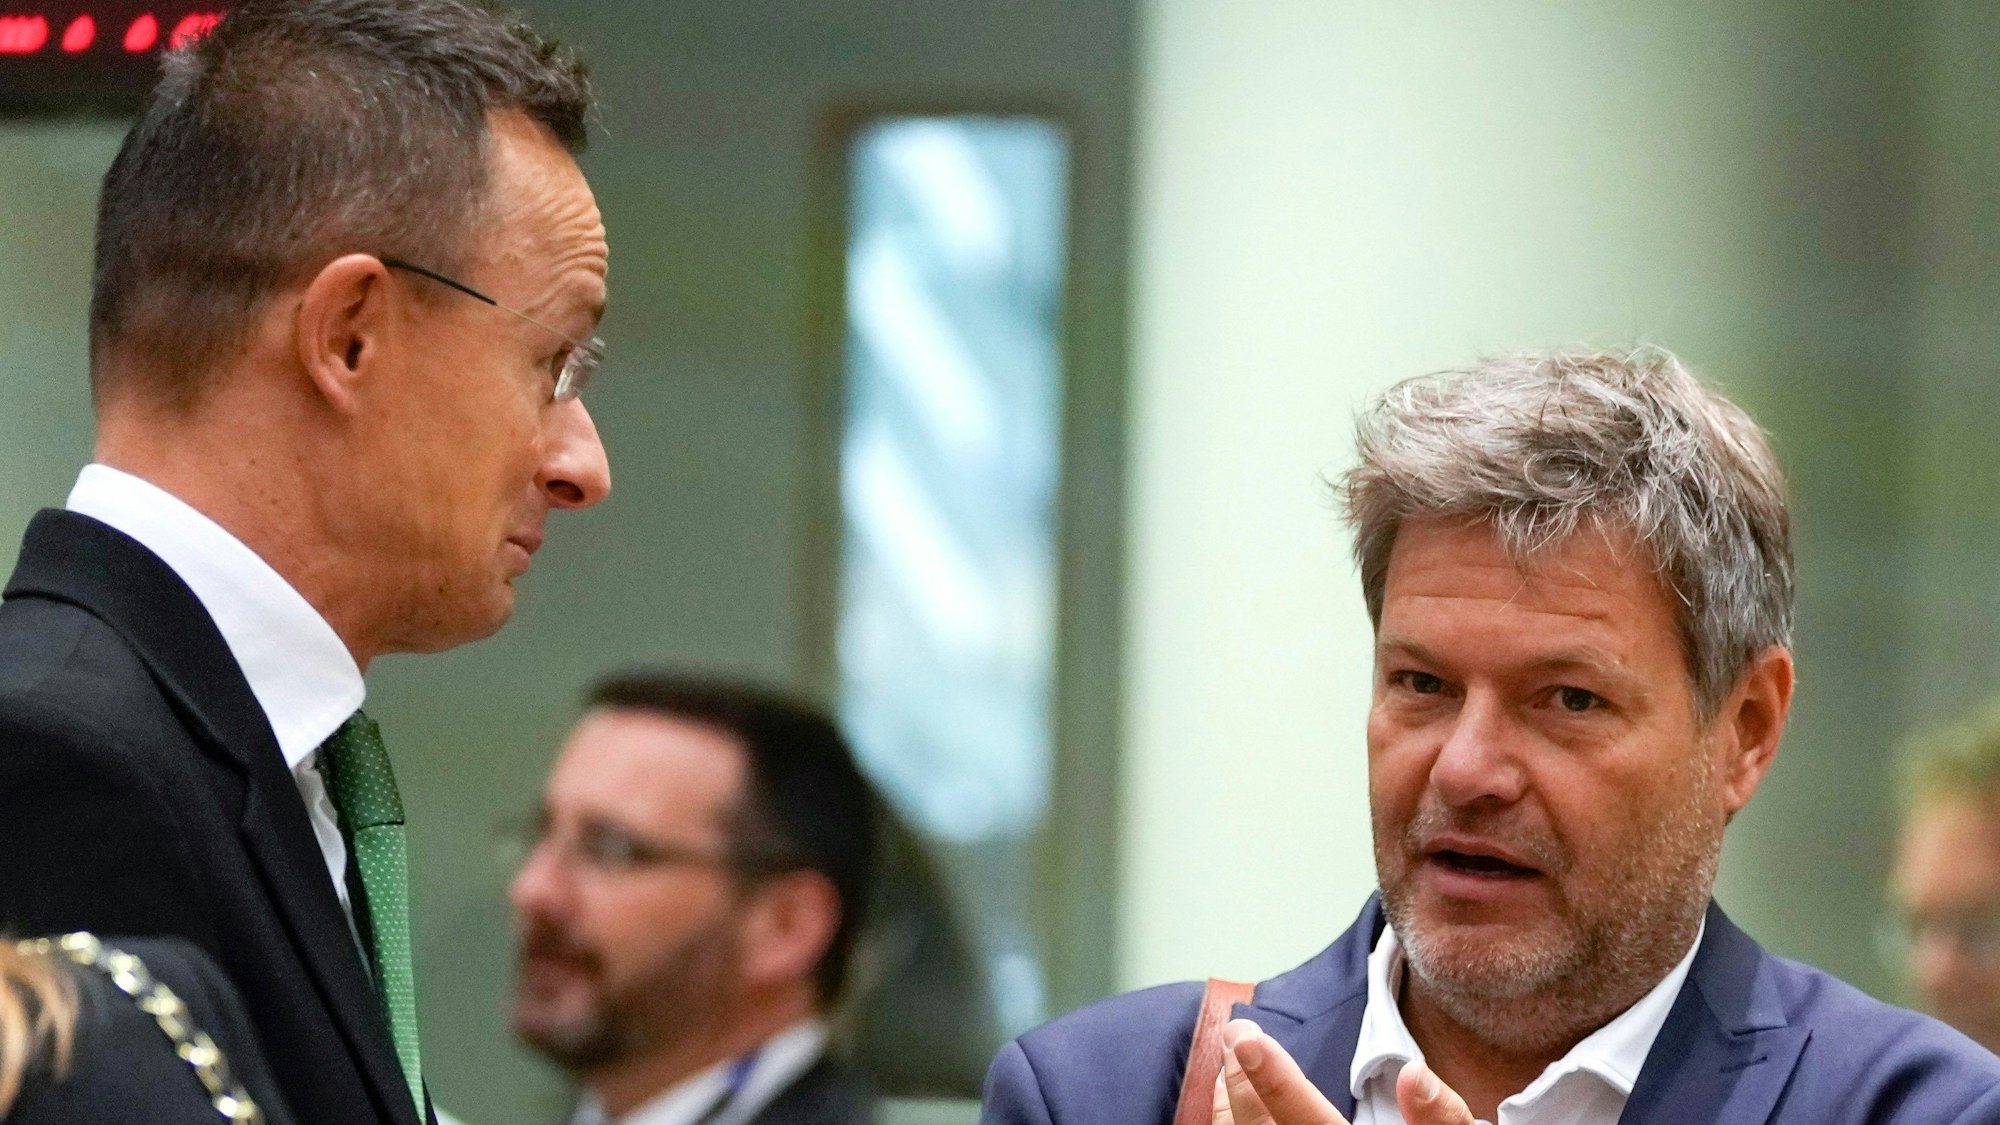 Robert Habeck (r, Bündnis 90/Die Grünen), Bundesminister für Wirtschaft und Klimaschutz, spricht mit dem ungarischen Außenminister Peter Szijjarto (l) während eines Treffens der EU-Energieminister in Brüssel am Freitag. (Archivbild)